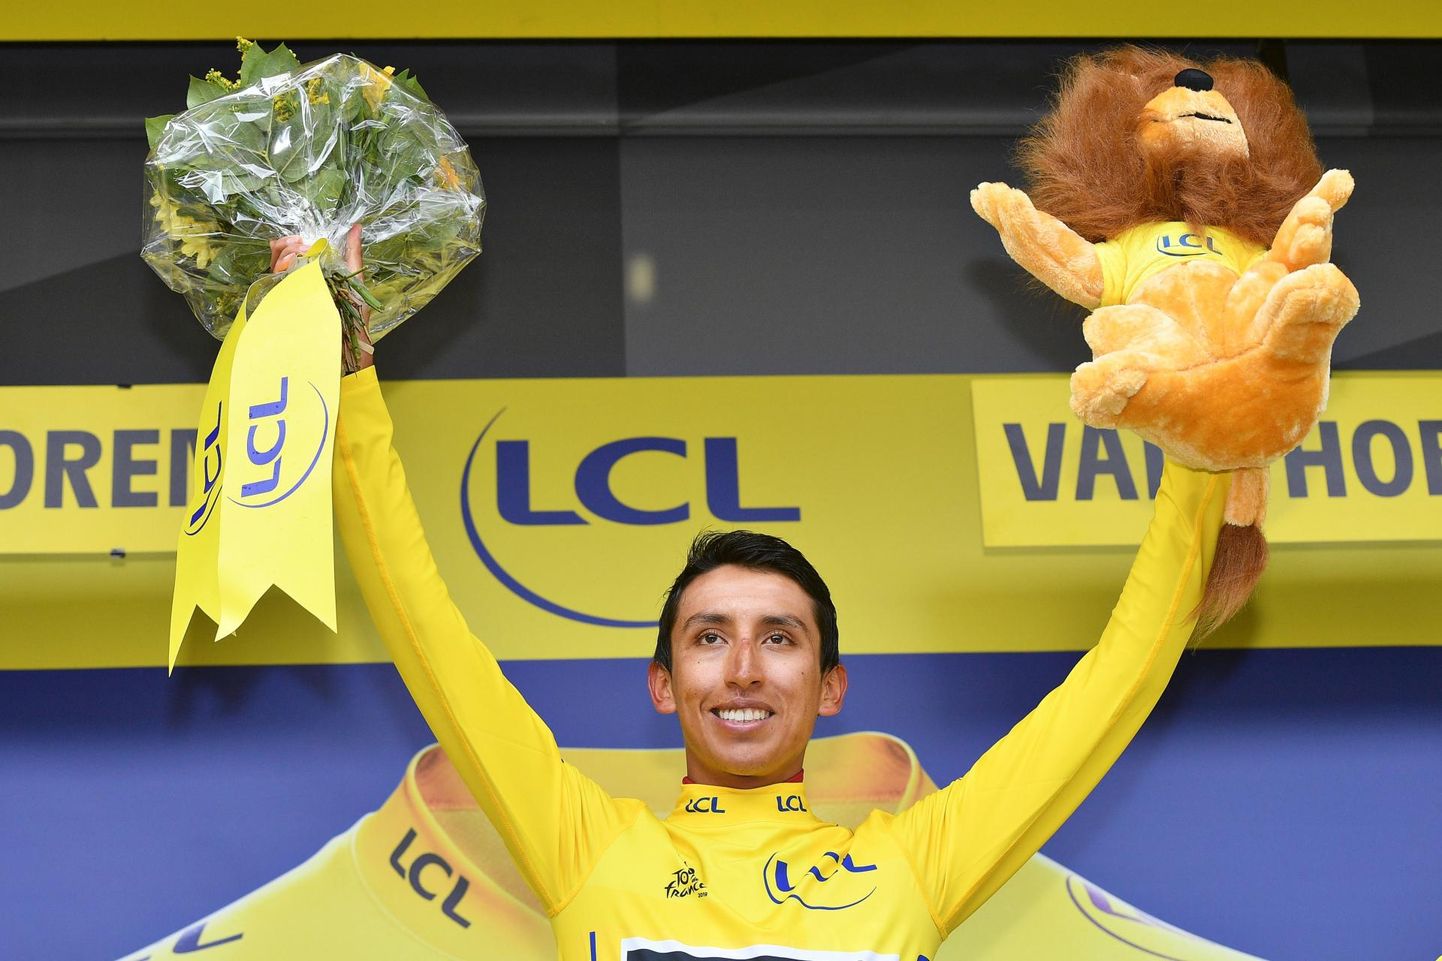 Egal Bernalist sai esimene kolumbialane, kes tulnud Tour de France’il üldvõitjaks